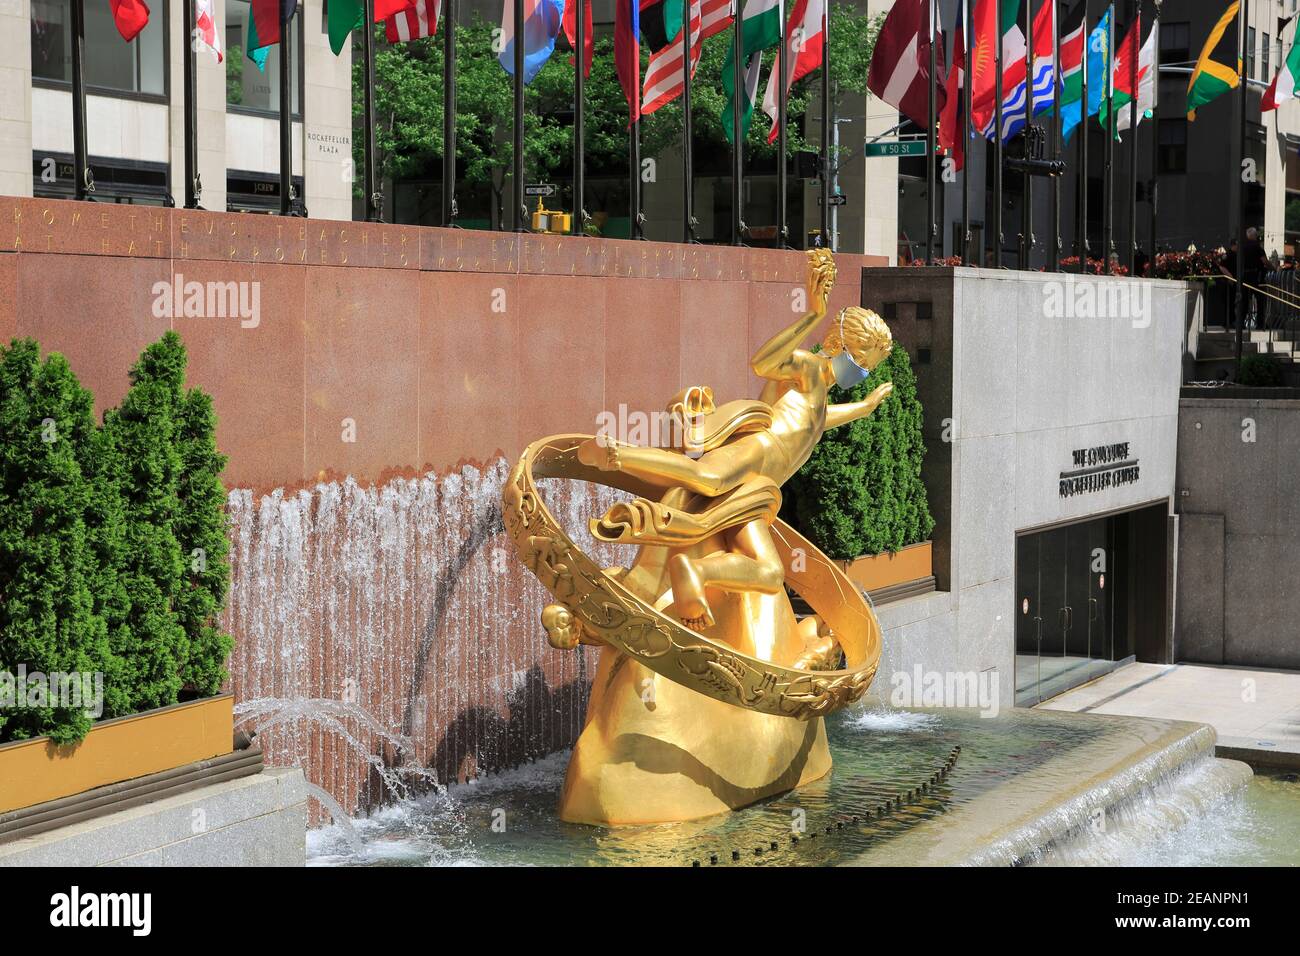 Prometheus Statue trägt Maske während Coronavirus, Covid-19 Pandemie, Rockefeller Center, Plaza, Manhattan, New York City, Vereinigte Staaten von Amerika Stockfoto